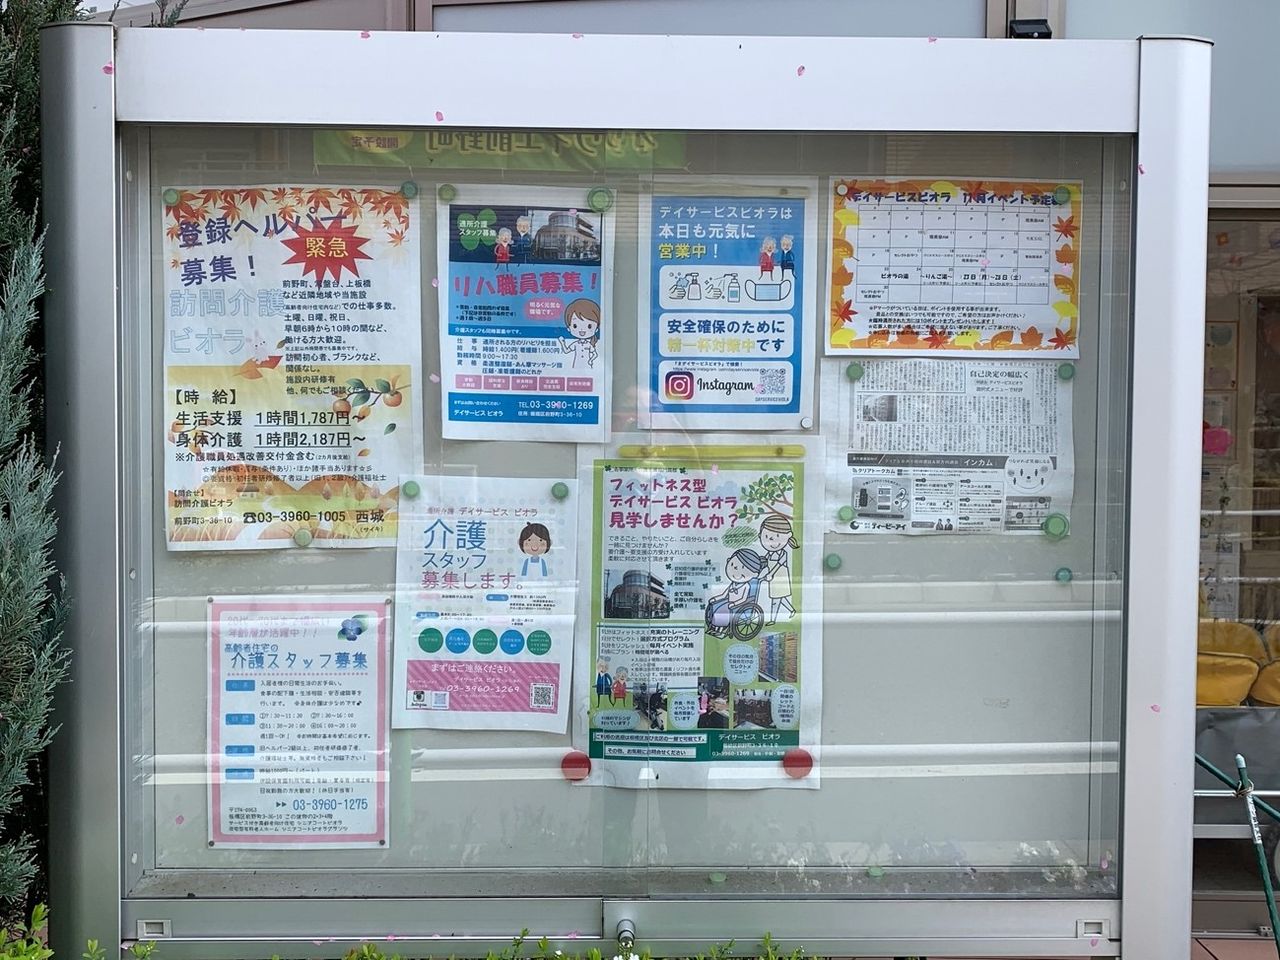 介护相关求人信息，现在日本的介护工作出现了劳动力短缺的问题